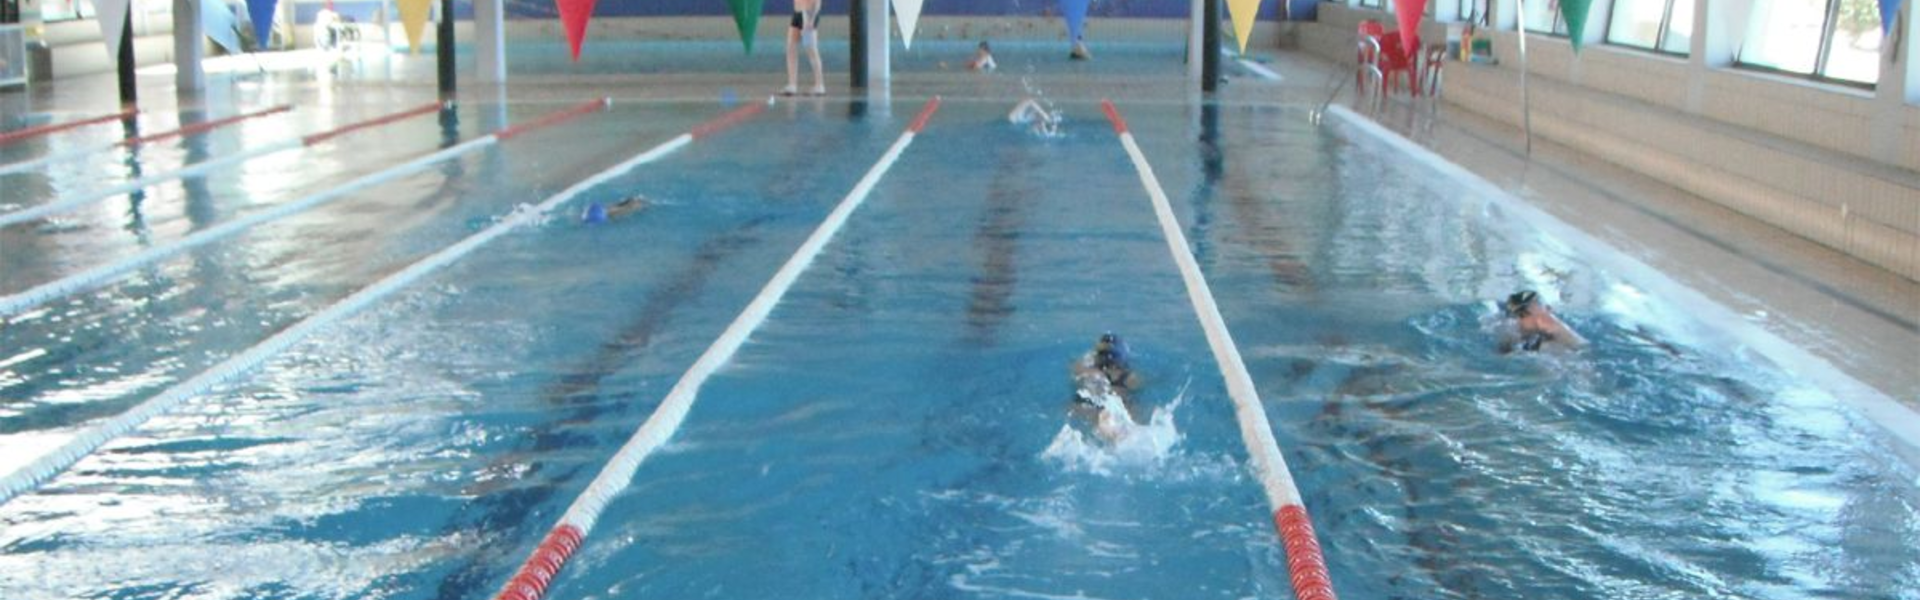 Personas nadando en la piscina municipal de Linares